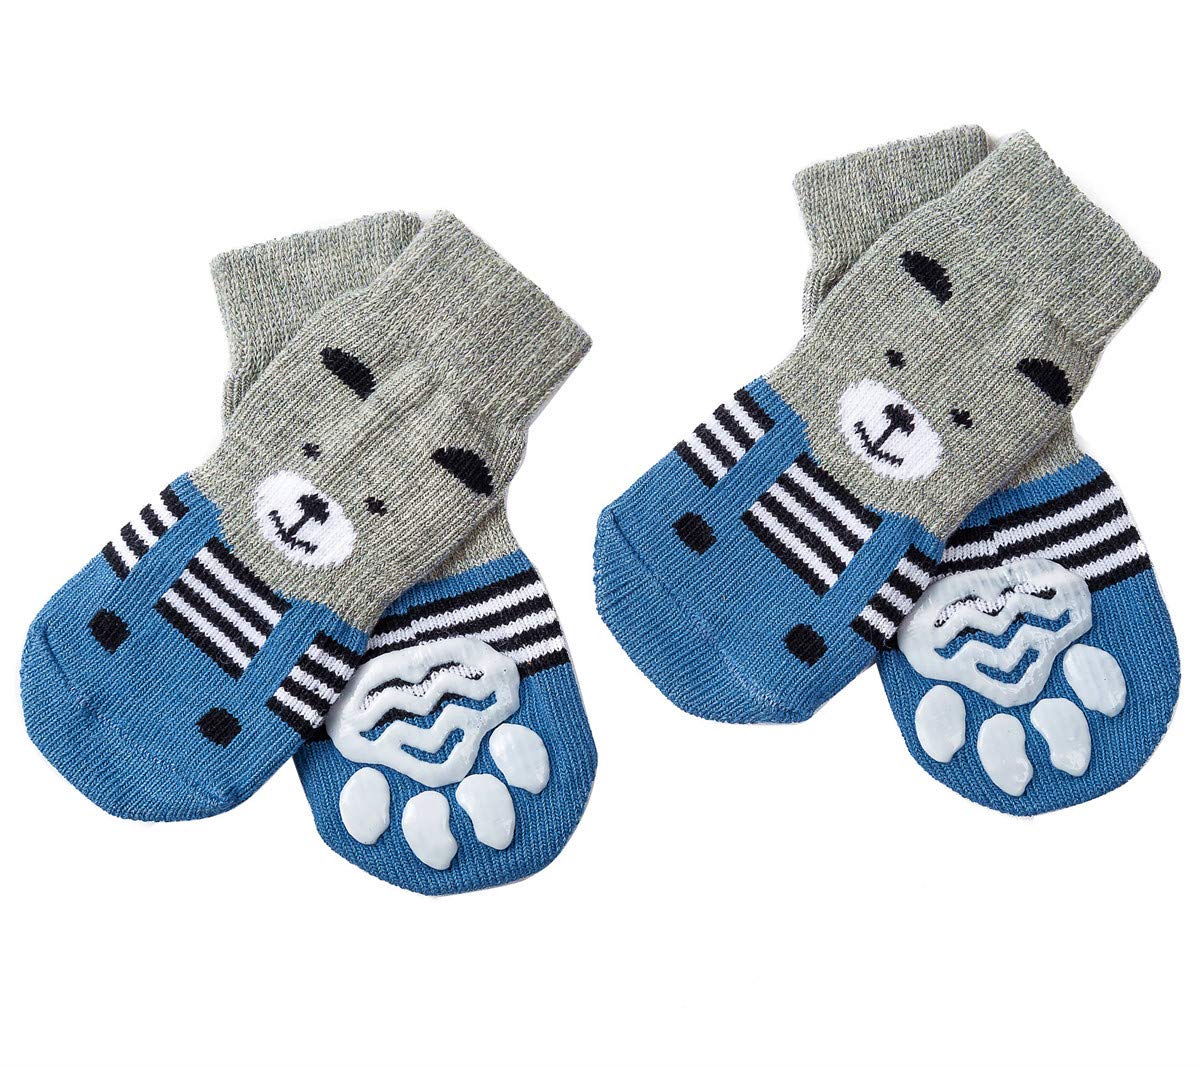 Akopawon 4 Pcs Anti-Slip Dog Socks